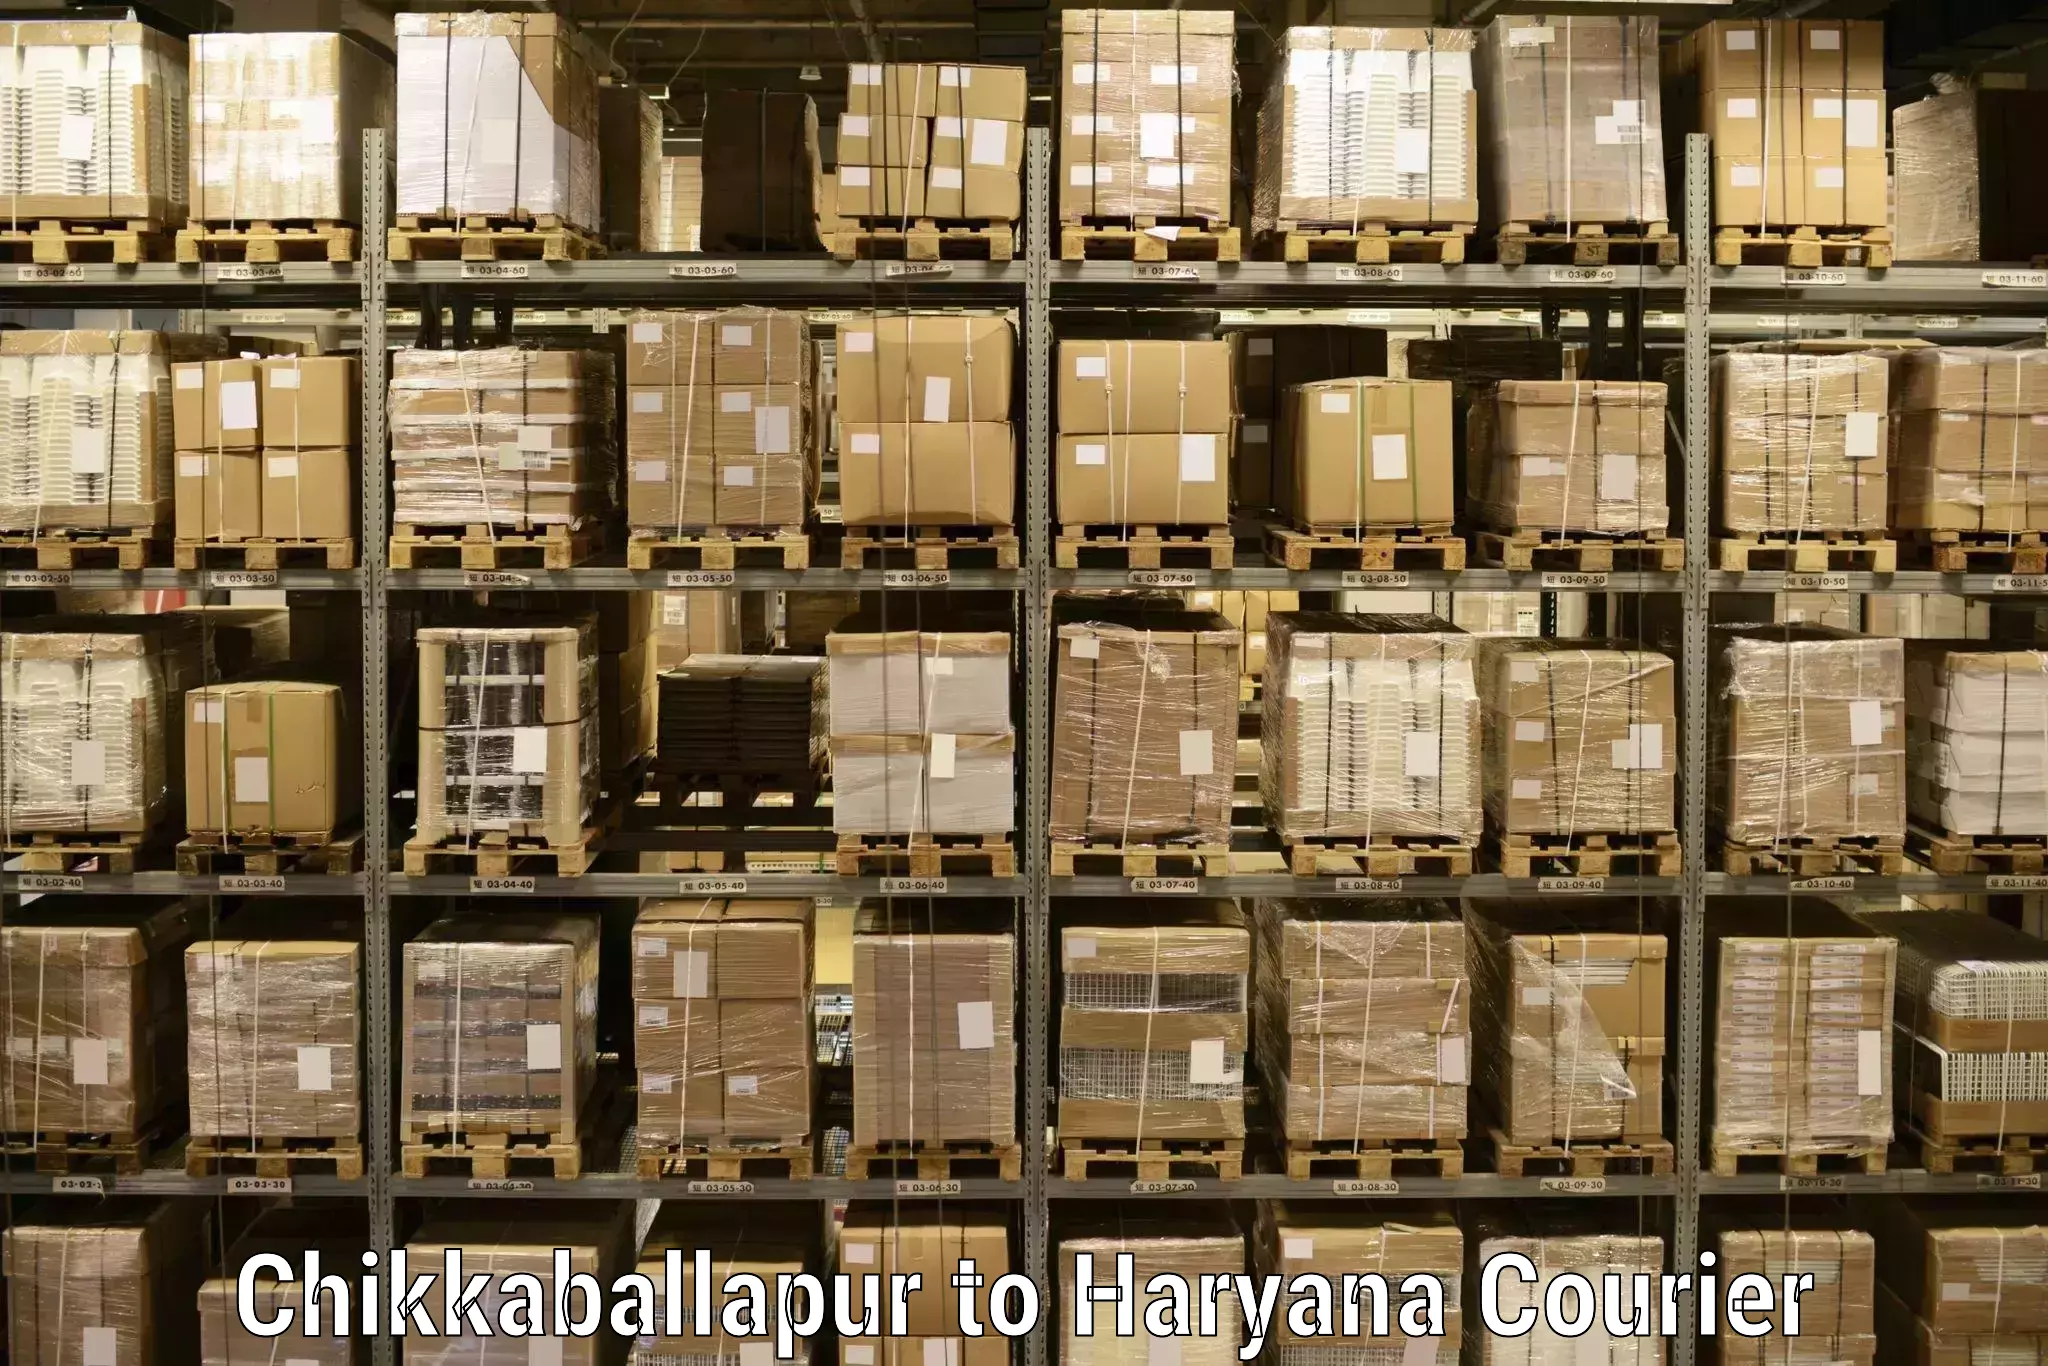 International courier networks Chikkaballapur to NIT Kurukshetra